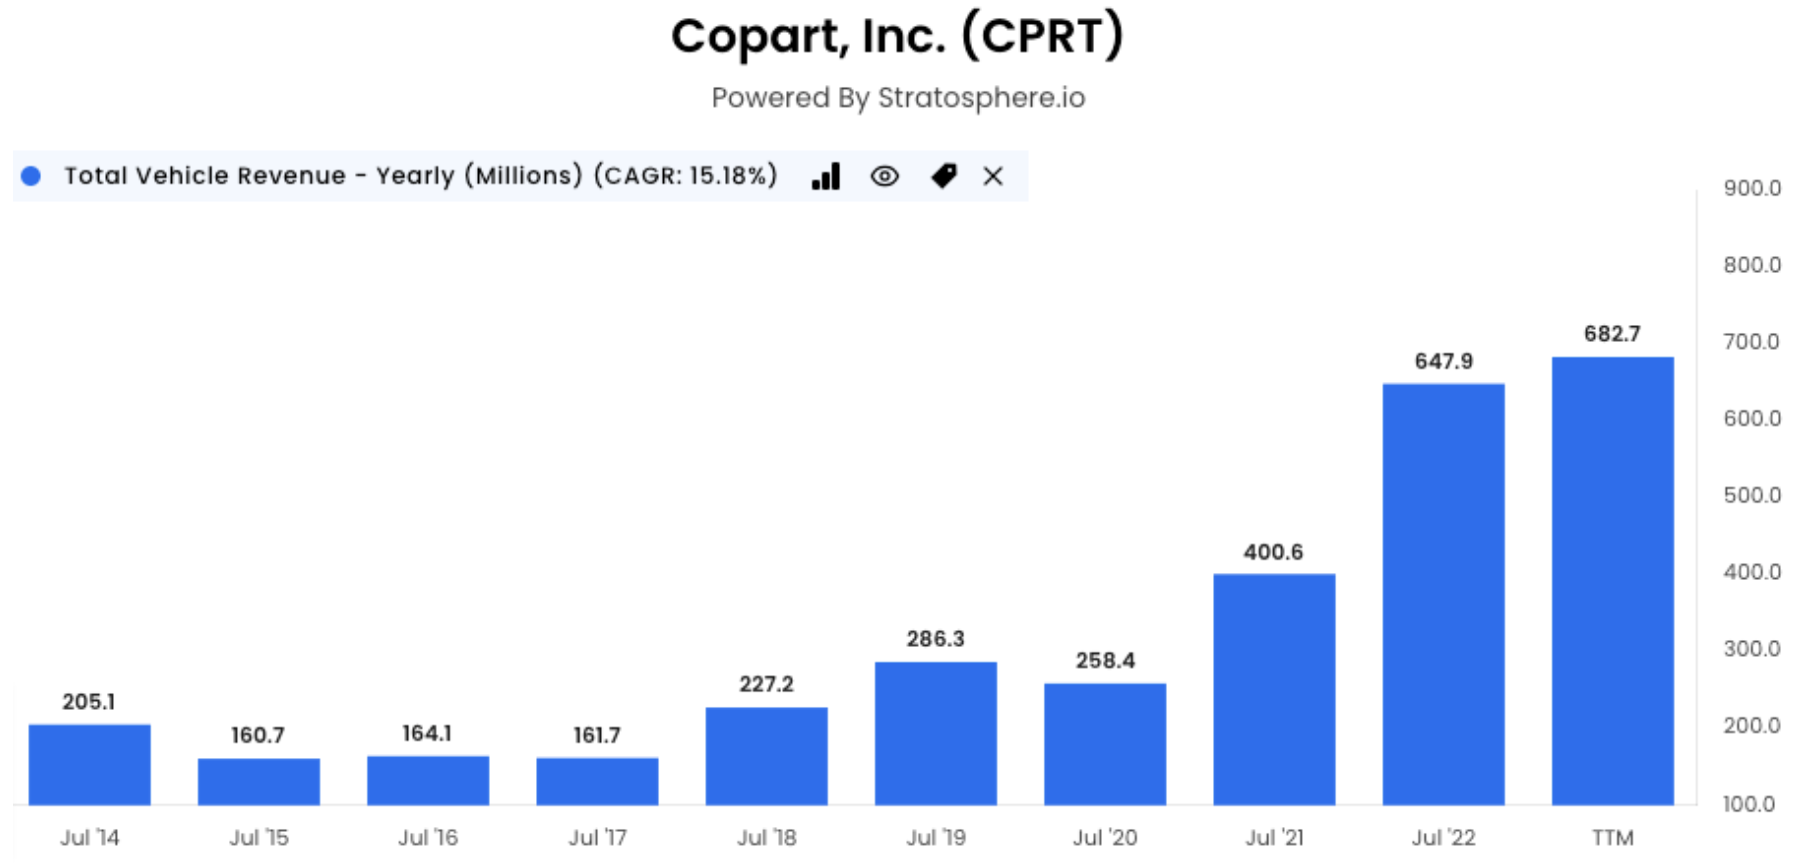 Copart Inc. total vehicle revenue graph